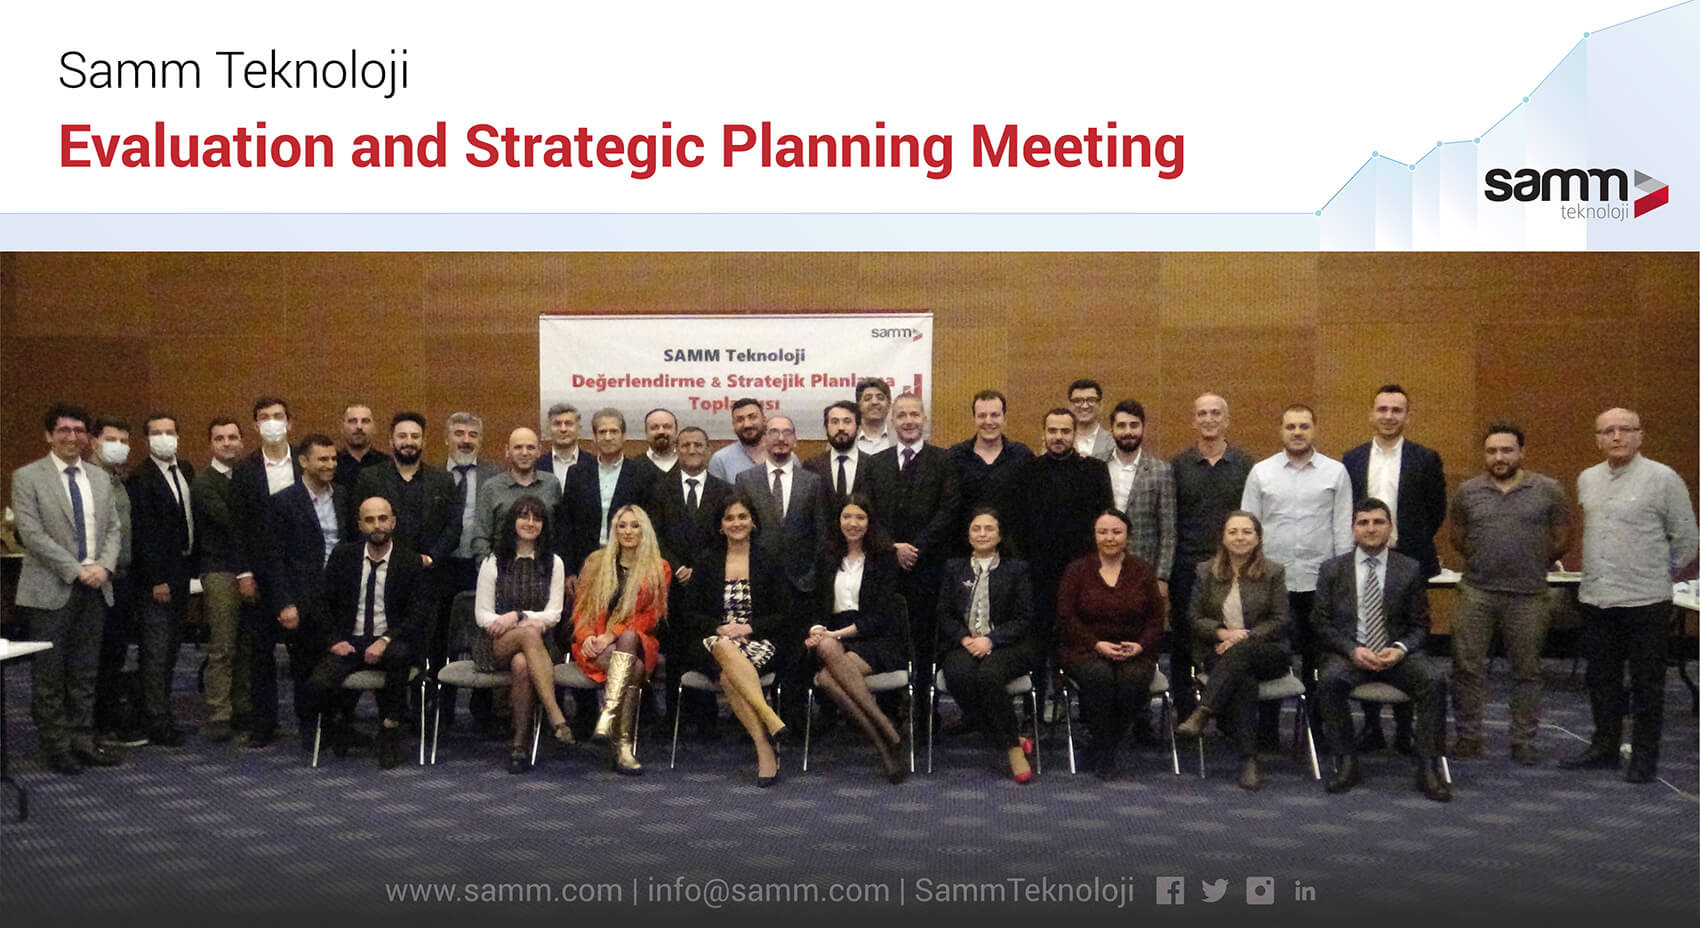 Samm Teknoloji, Treffen zur Bewertung und strategischen Planung